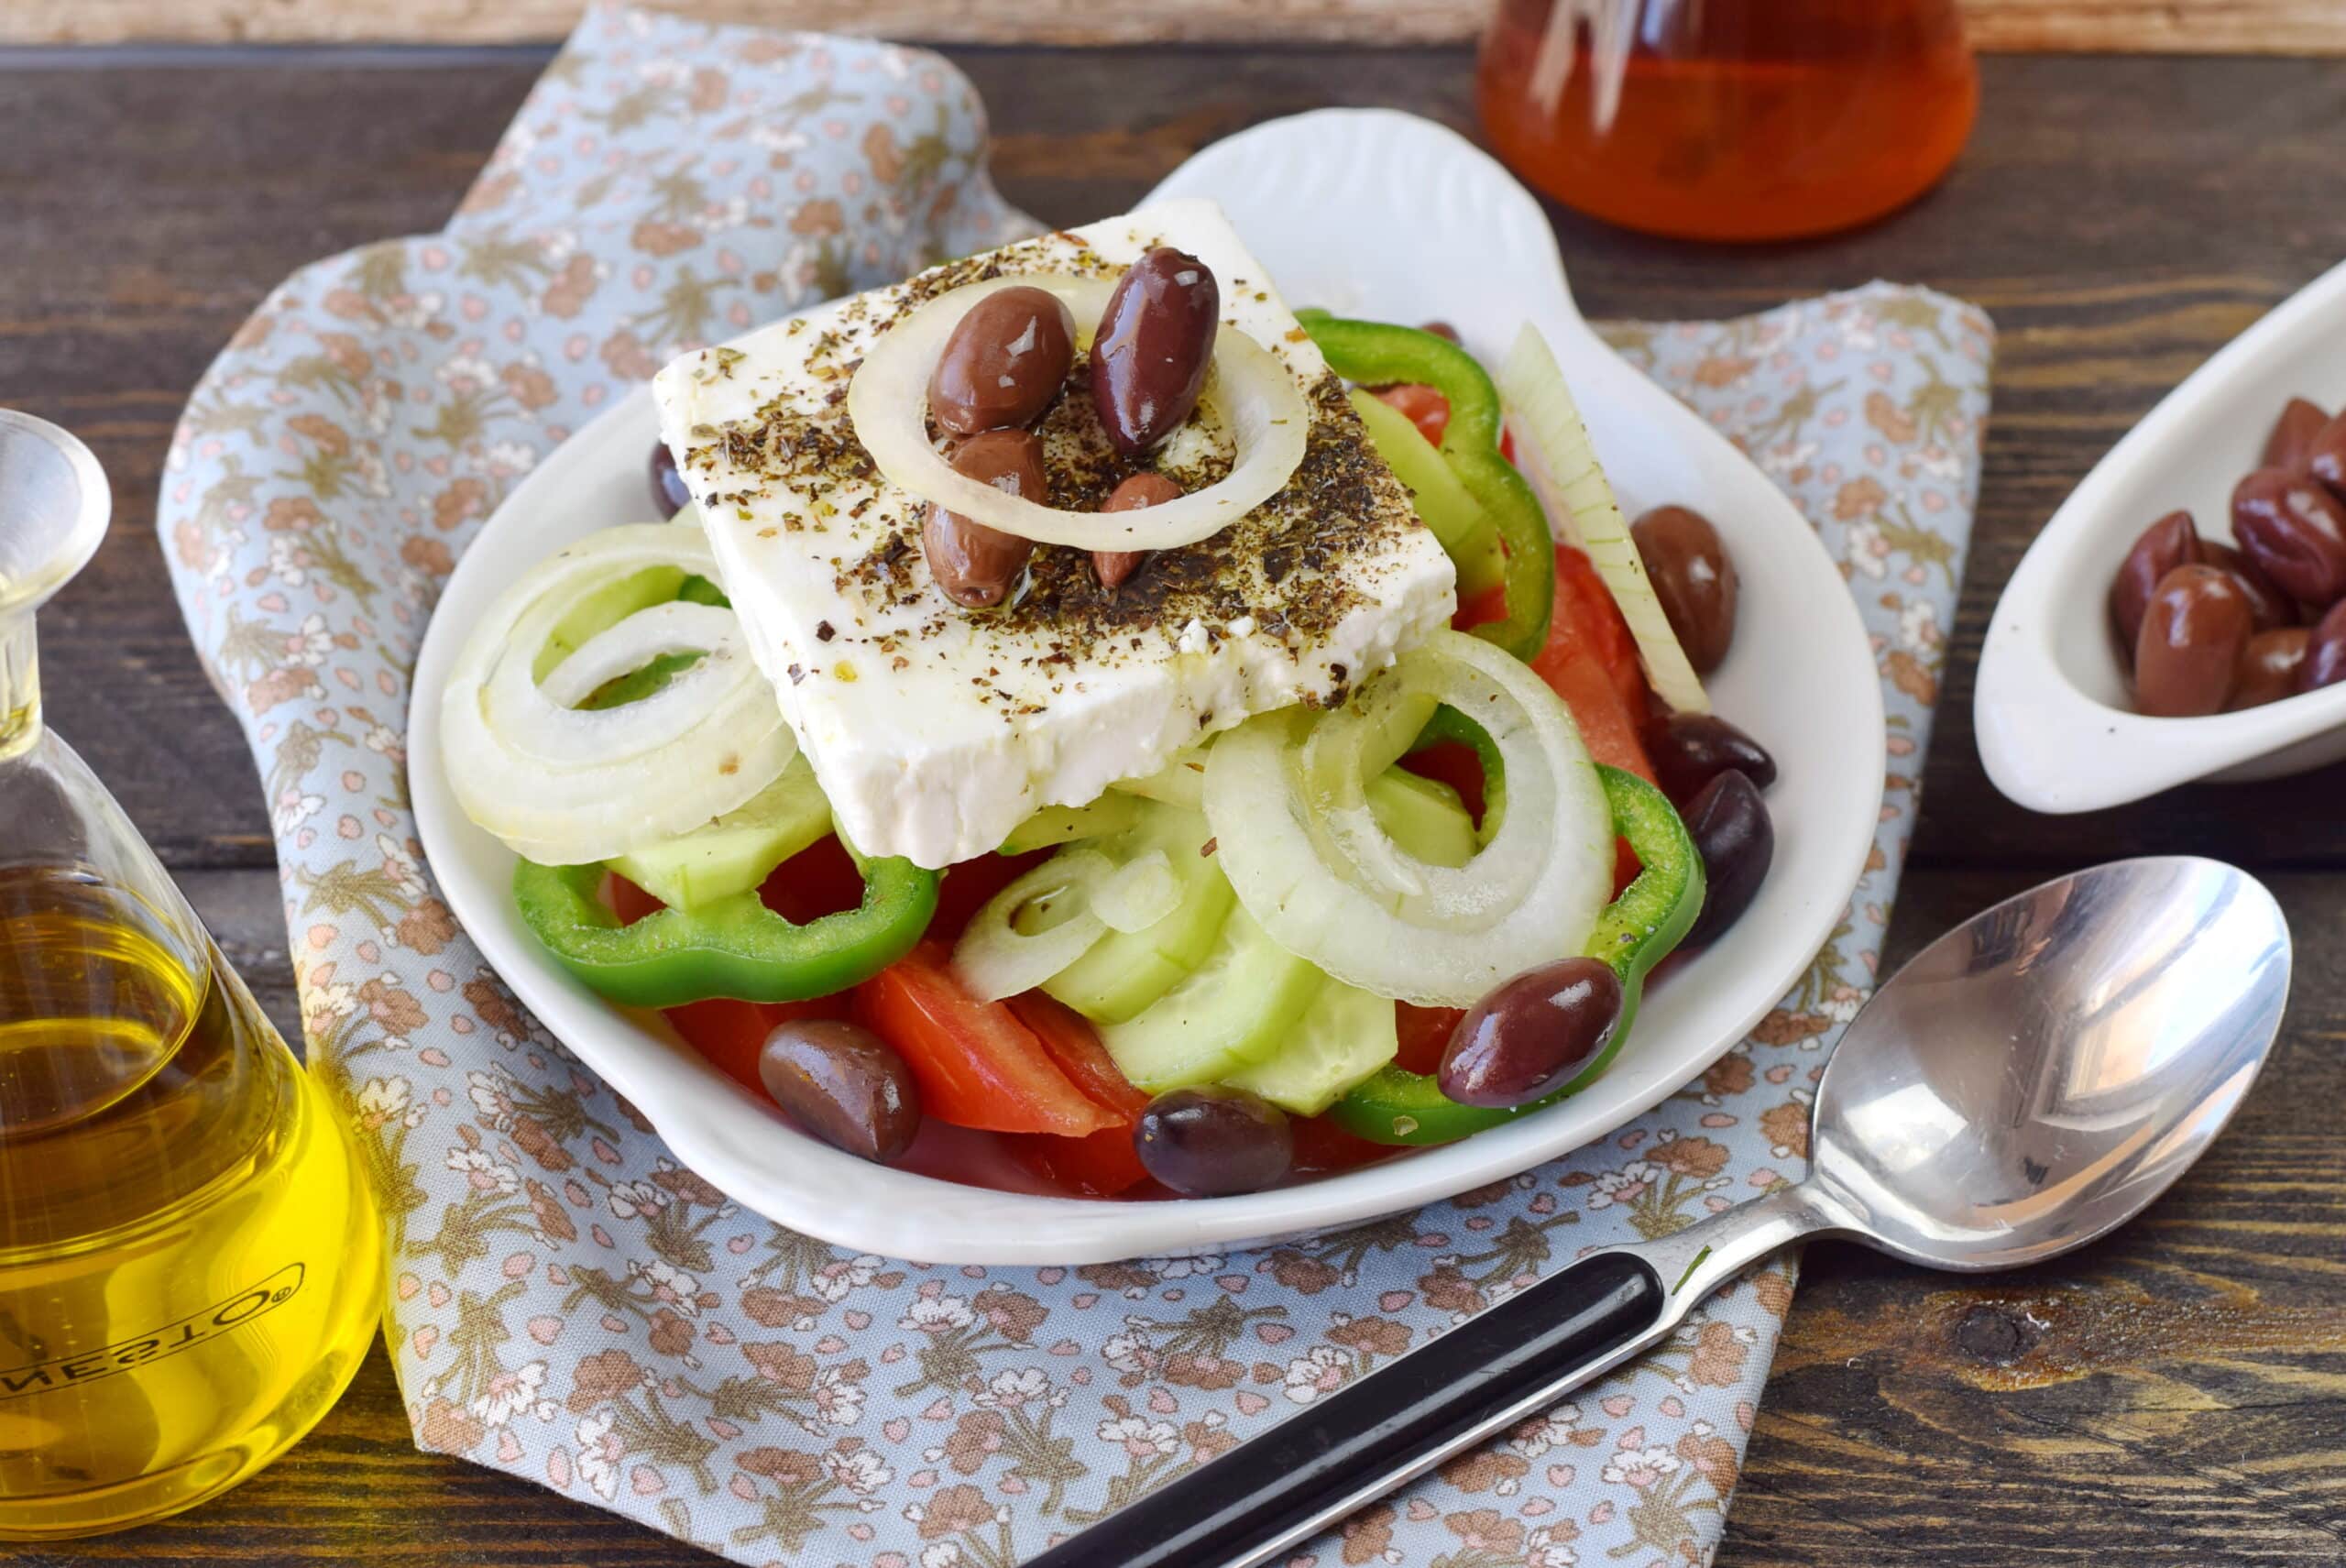 horiatiki salade ou salade grecque scaled 1